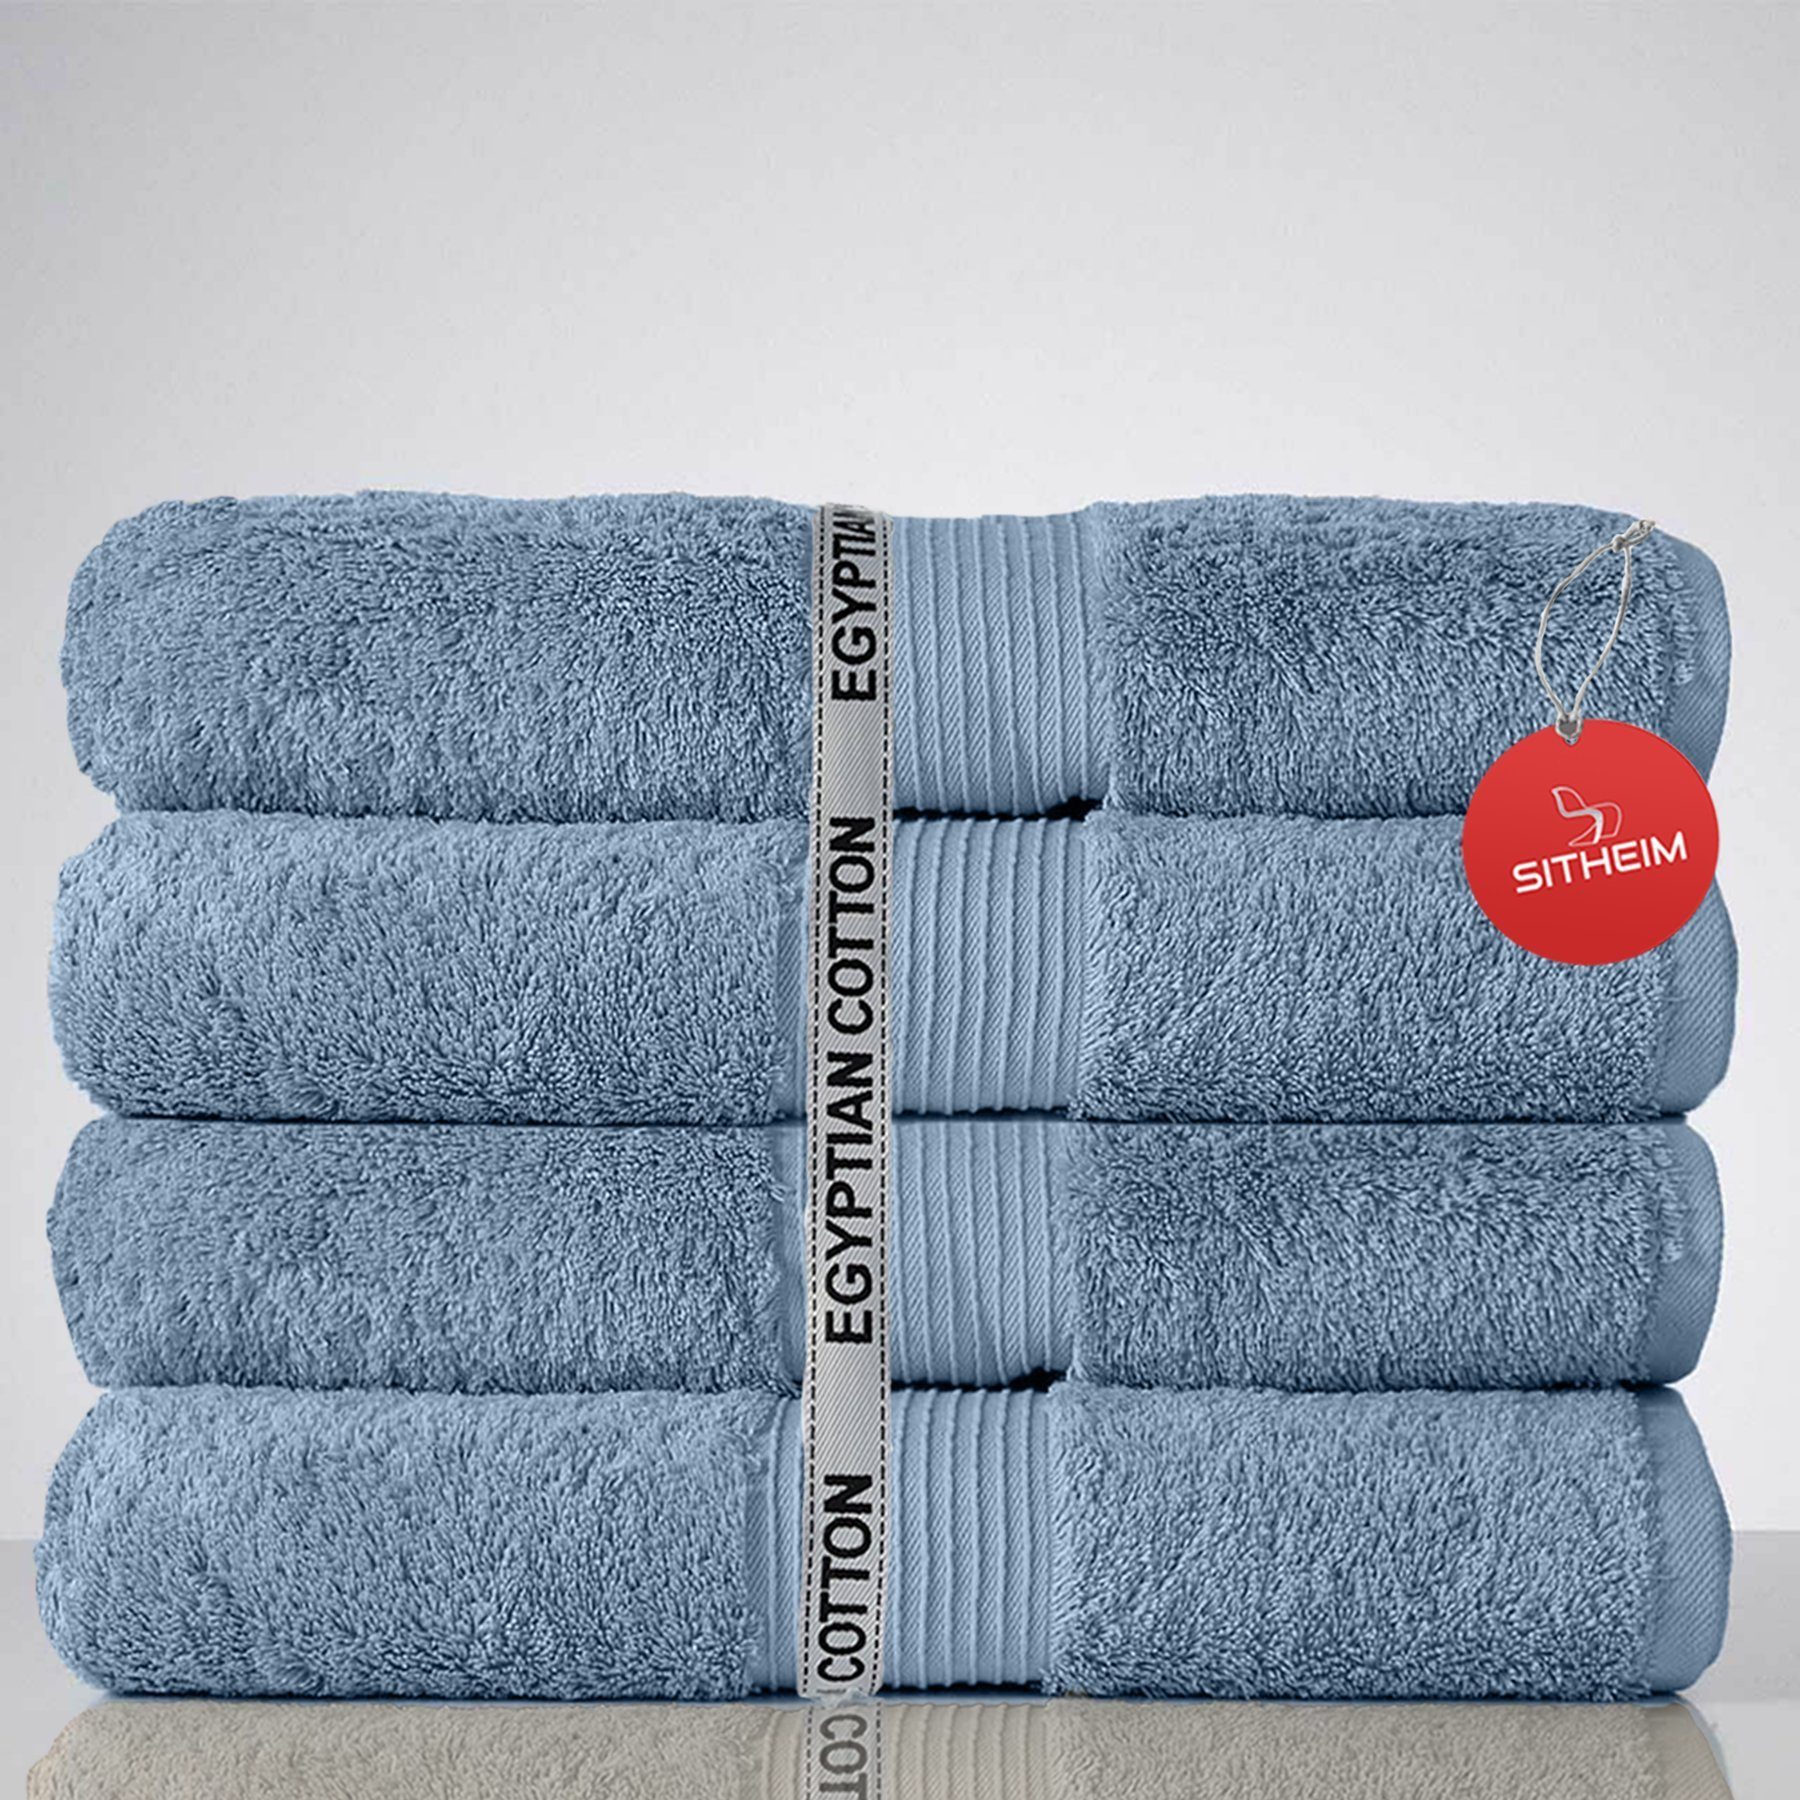 Sitheim-Europe Handtuch Set GIZA LINE I aus 100% Baumwolle (Spar-Set, 4-tlg) Duschtuchset, Ägyptische Baumwolle, (Spar-set, 4-tlg), 100% premium ägyptische Baumwolle, langlebig Babyblau | Handtuch-Sets